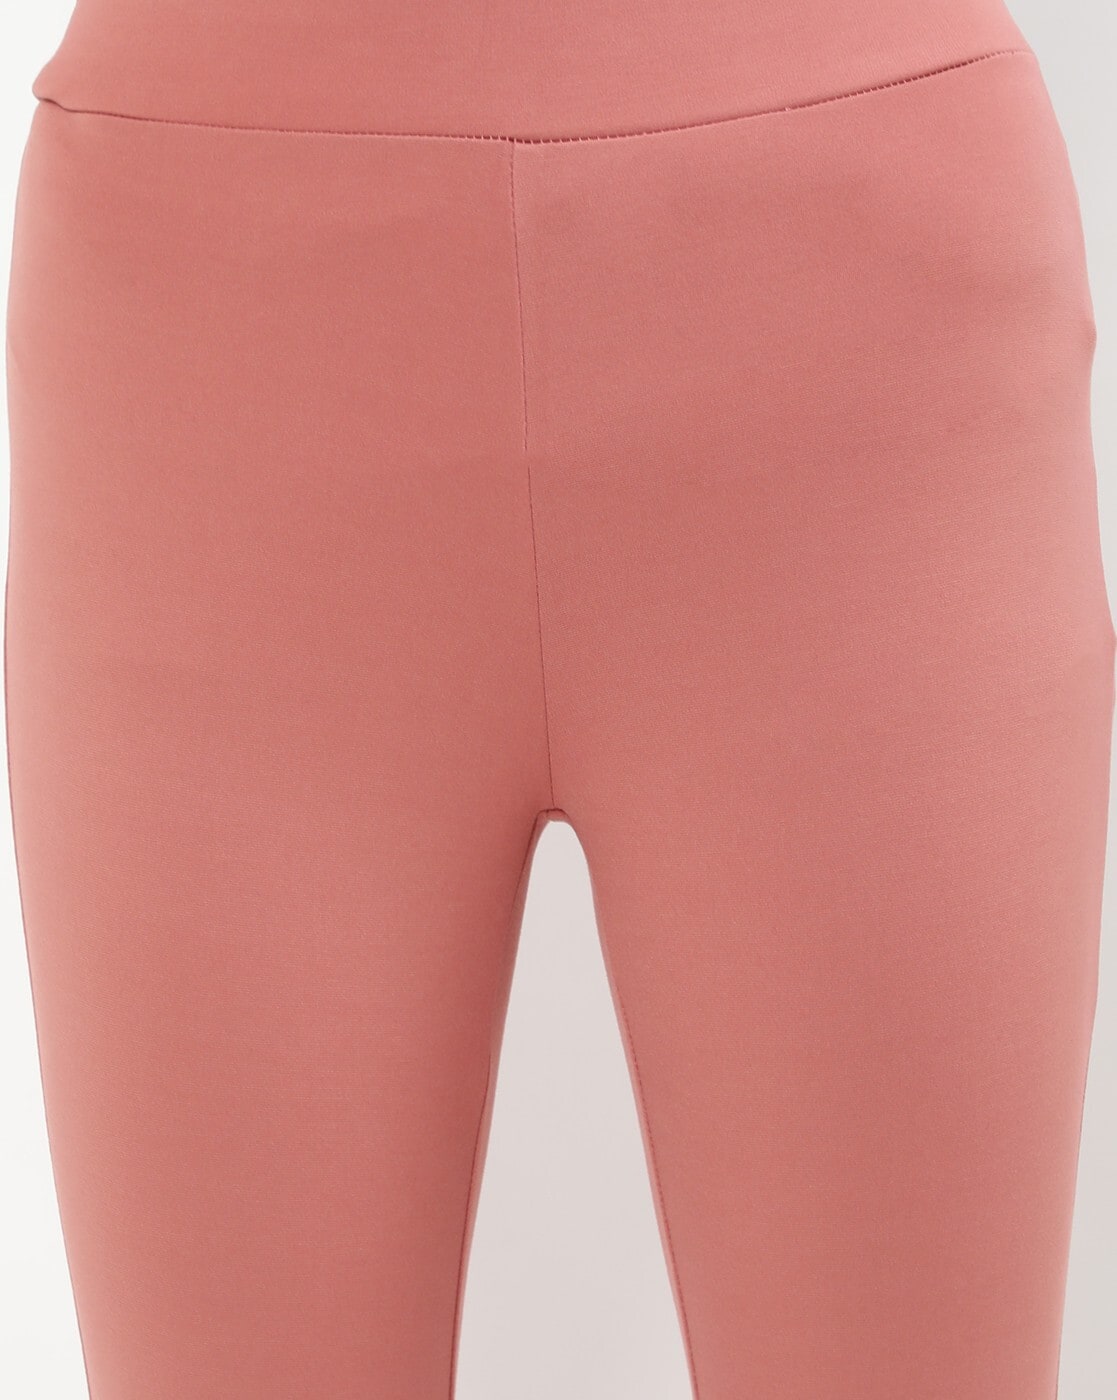 Amazon.com: BRASSU 2pcs Plus Size Yoga Pants Hip Lifting High Waist Peach  Hip Pants Sports Pants Leggings Fitness Pants (Color : Light Brown, Size :  XXXX-Large) : Clothing, Shoes & Jewelry